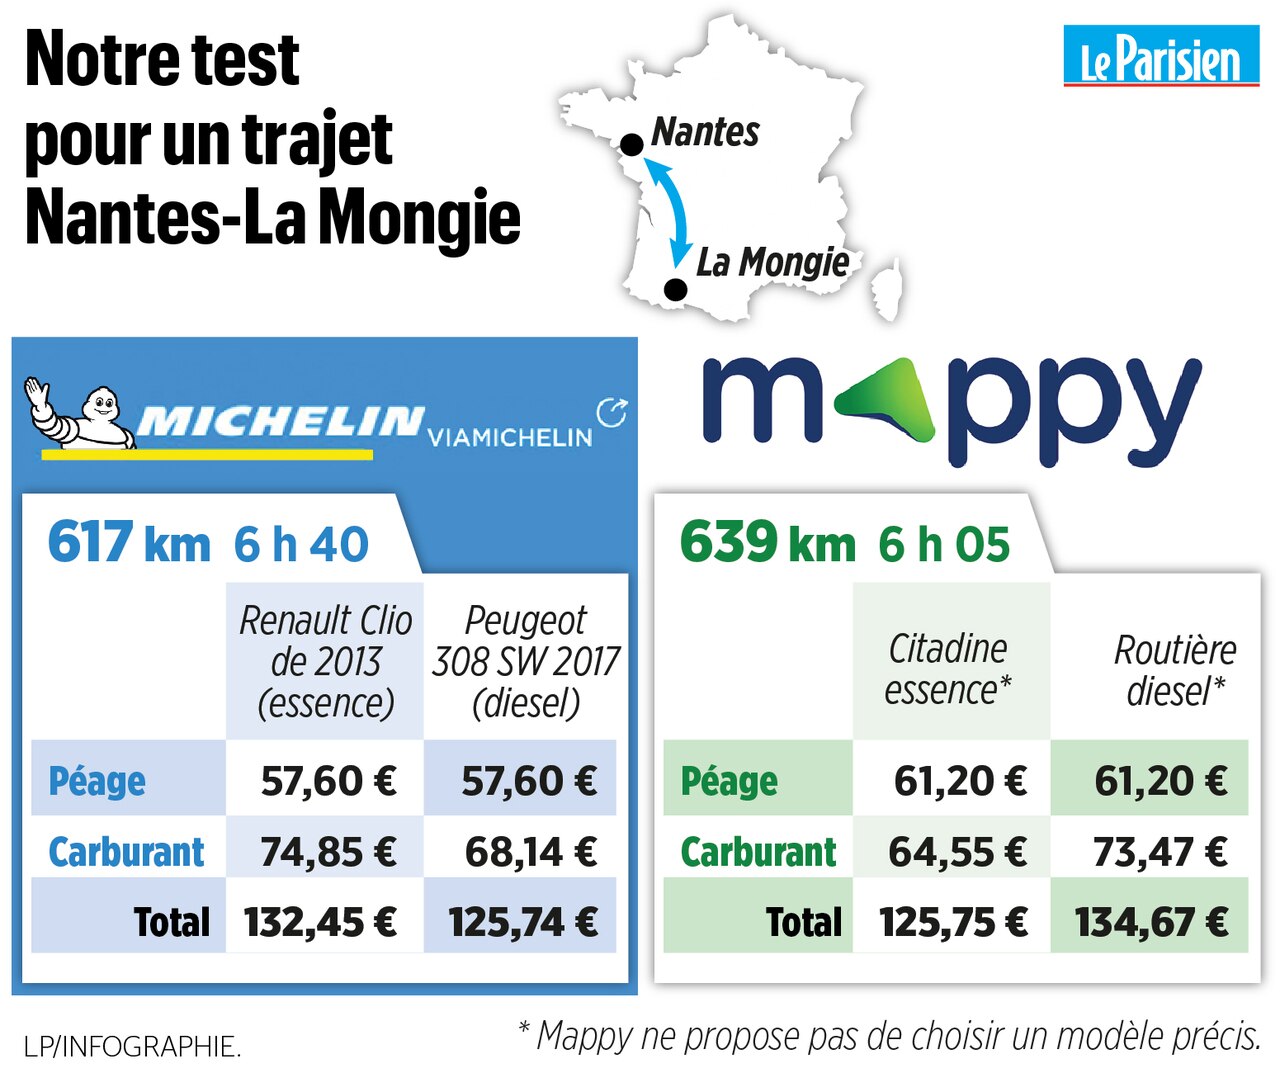 católico latín traductor Mappy ou ViaMichelin : calculez au plus juste le coût de vos trajets en  voiture - Le Parisien